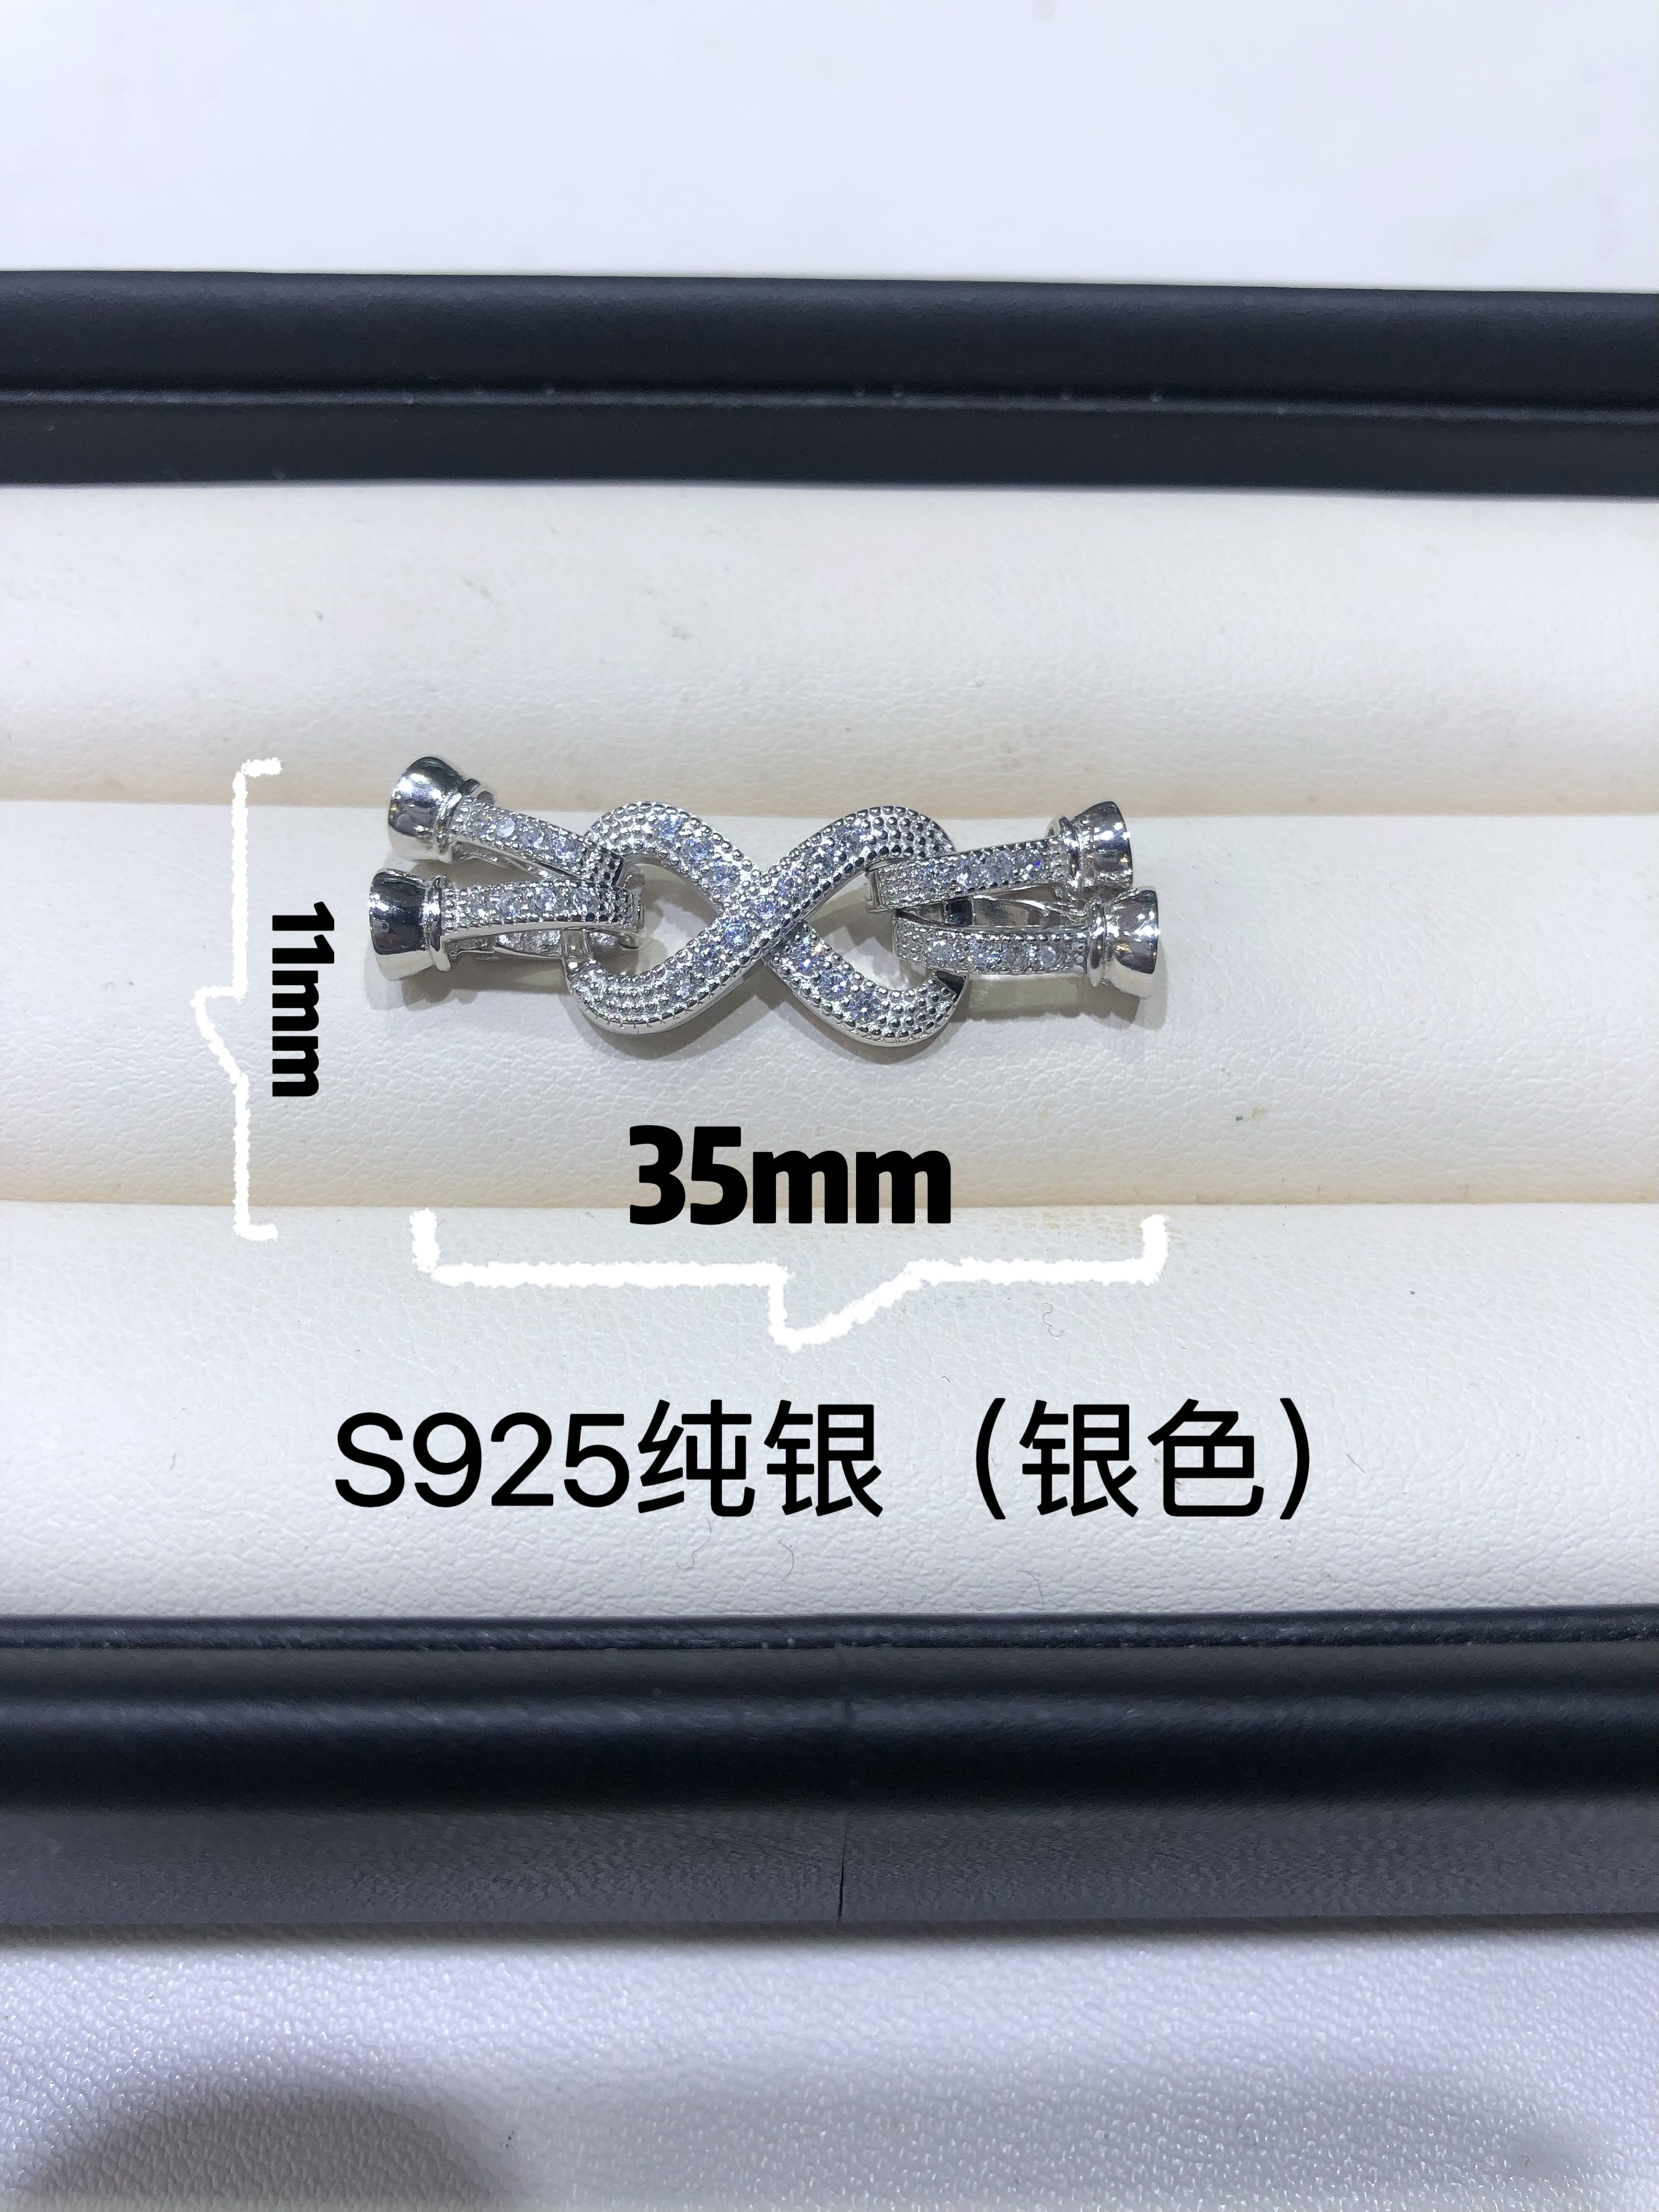 厂家直销DIY珍珠配件通体S925纯银双排八字扣头 连接扣子项链手链